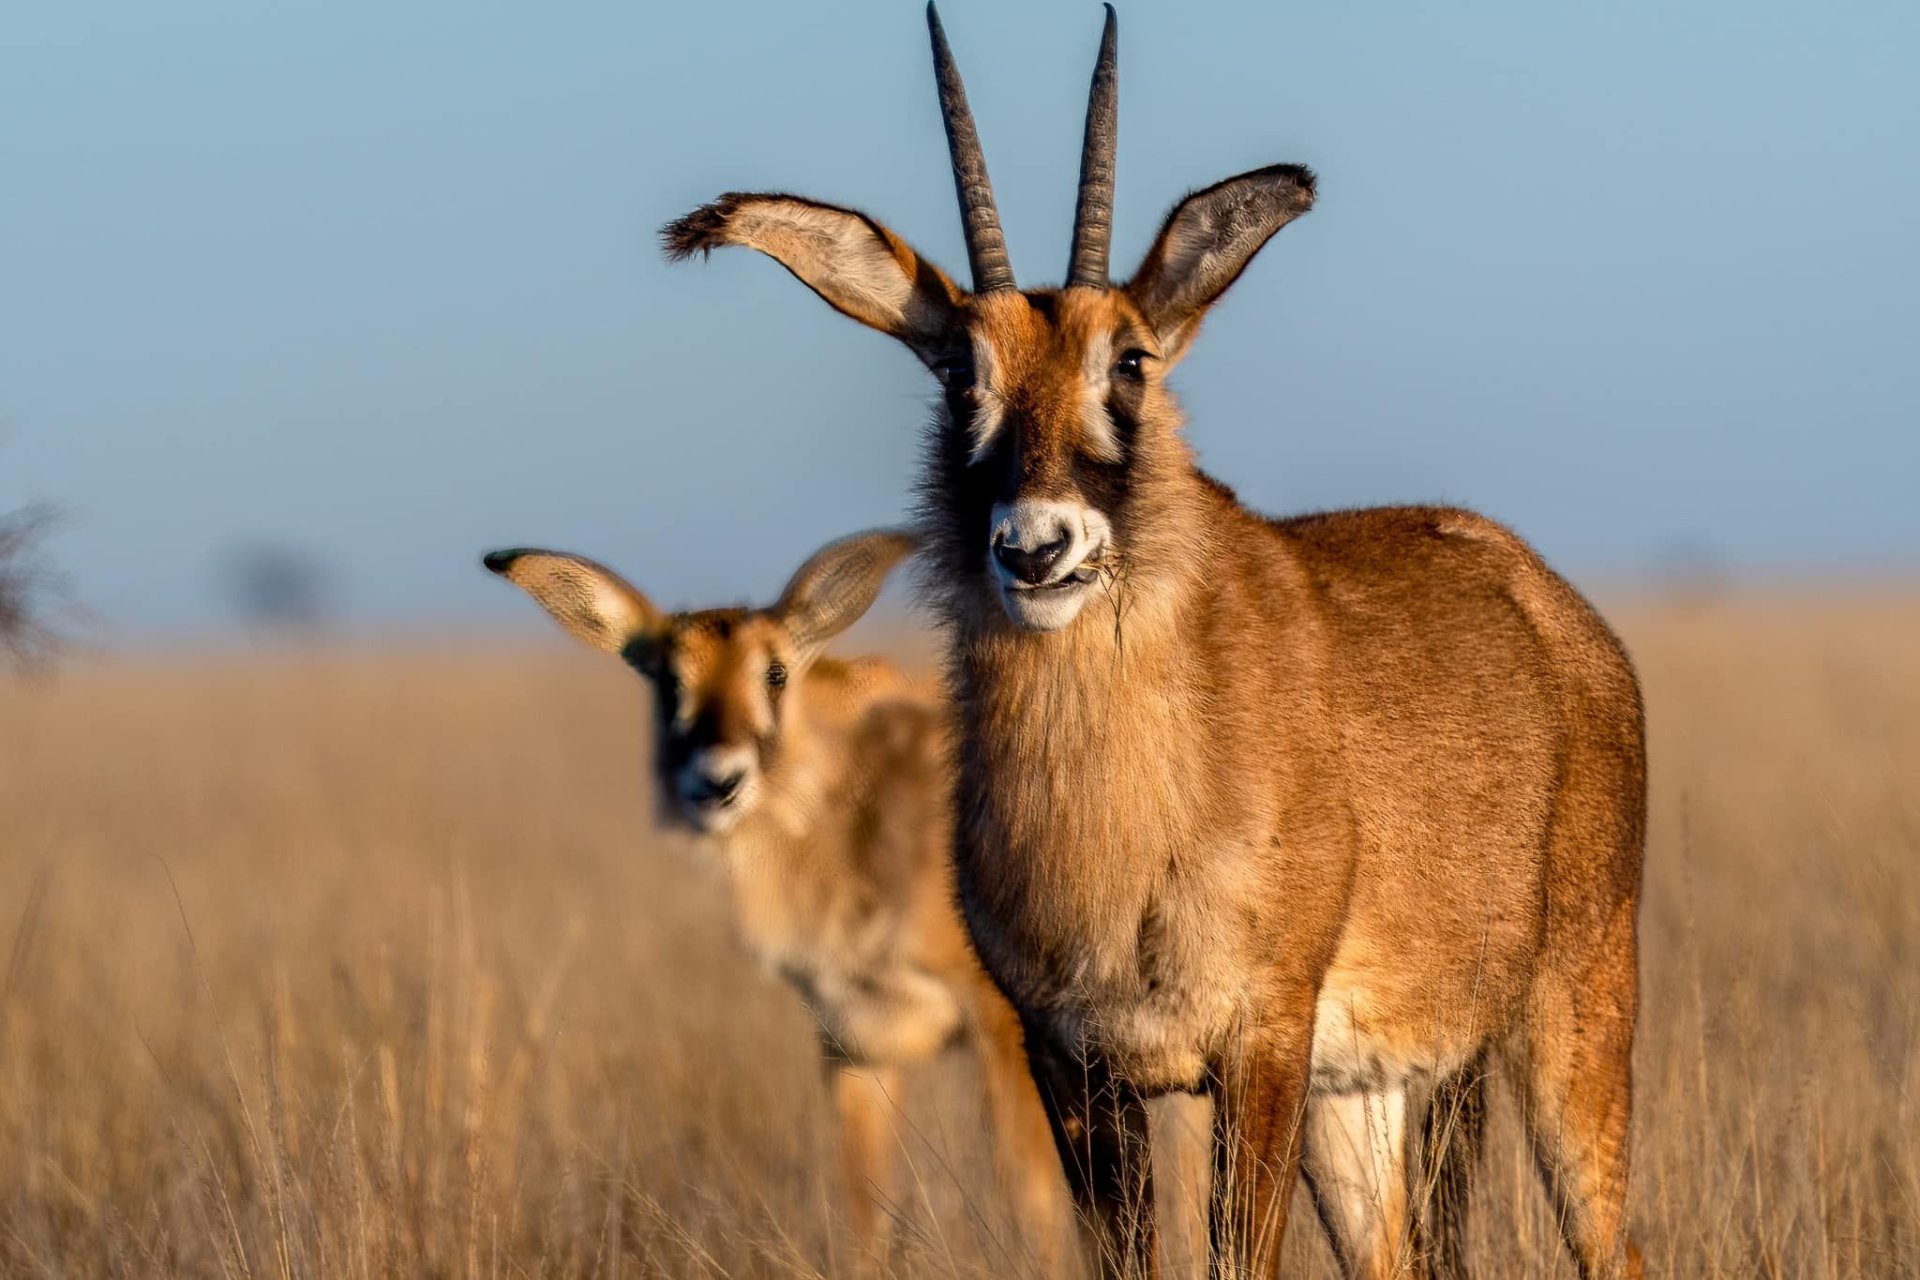 Antelope roan